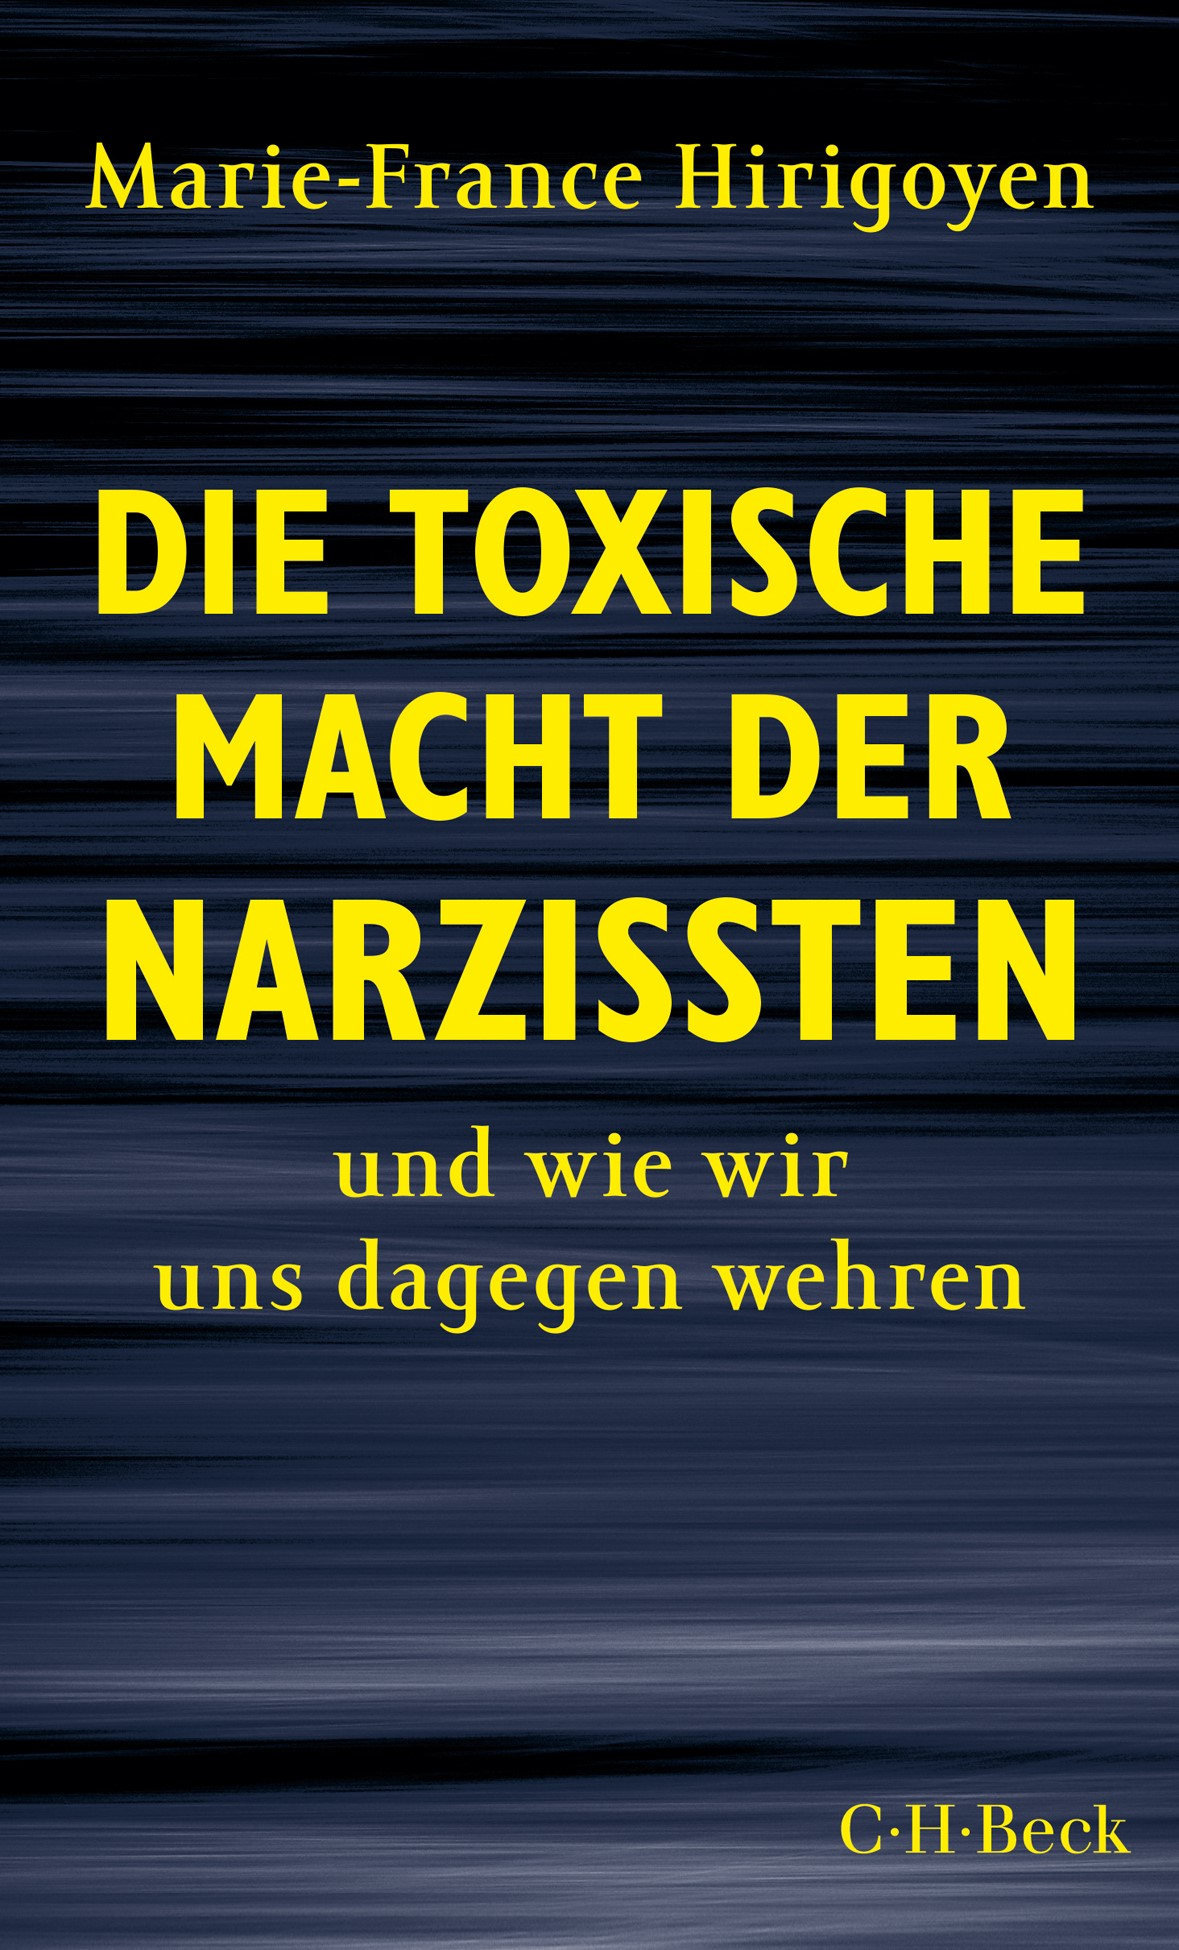 Cover: Hirigoyen, Marie-France, Die toxische Macht der Narzissten